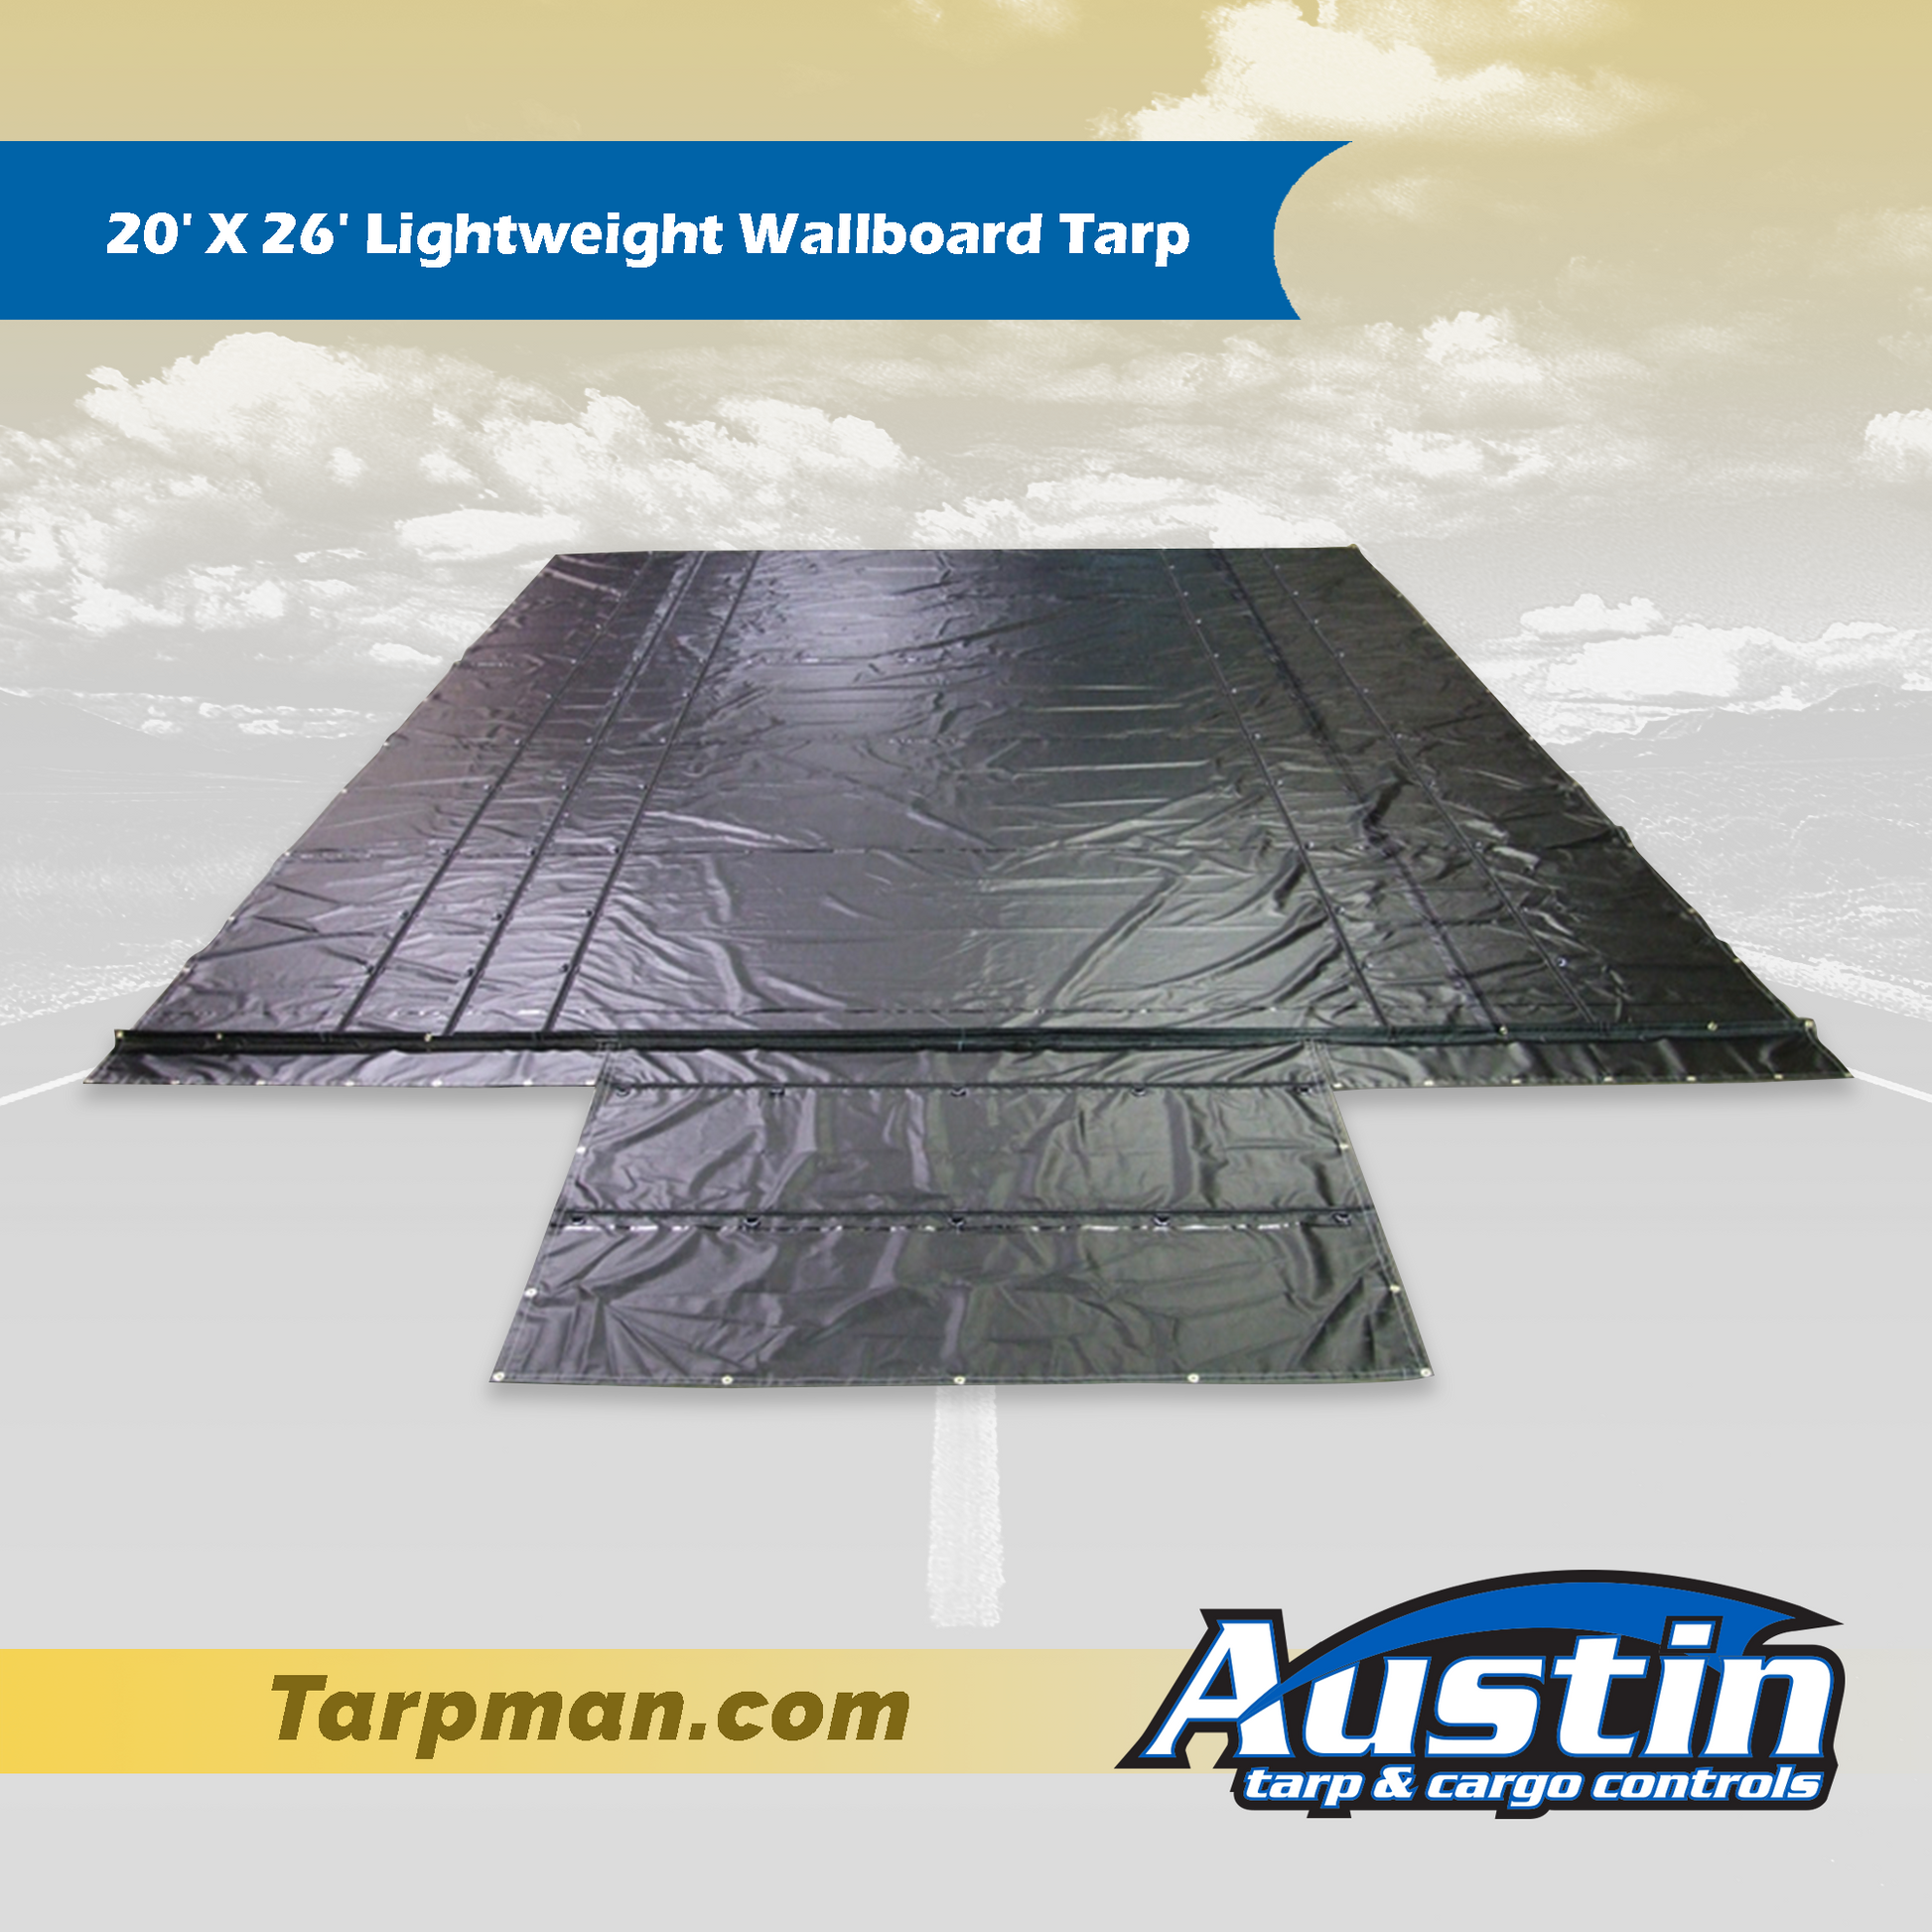 20' X 26' Lightweight Wallboard Tarp Tarpman.com | Austin Tarp & Cargo Controls